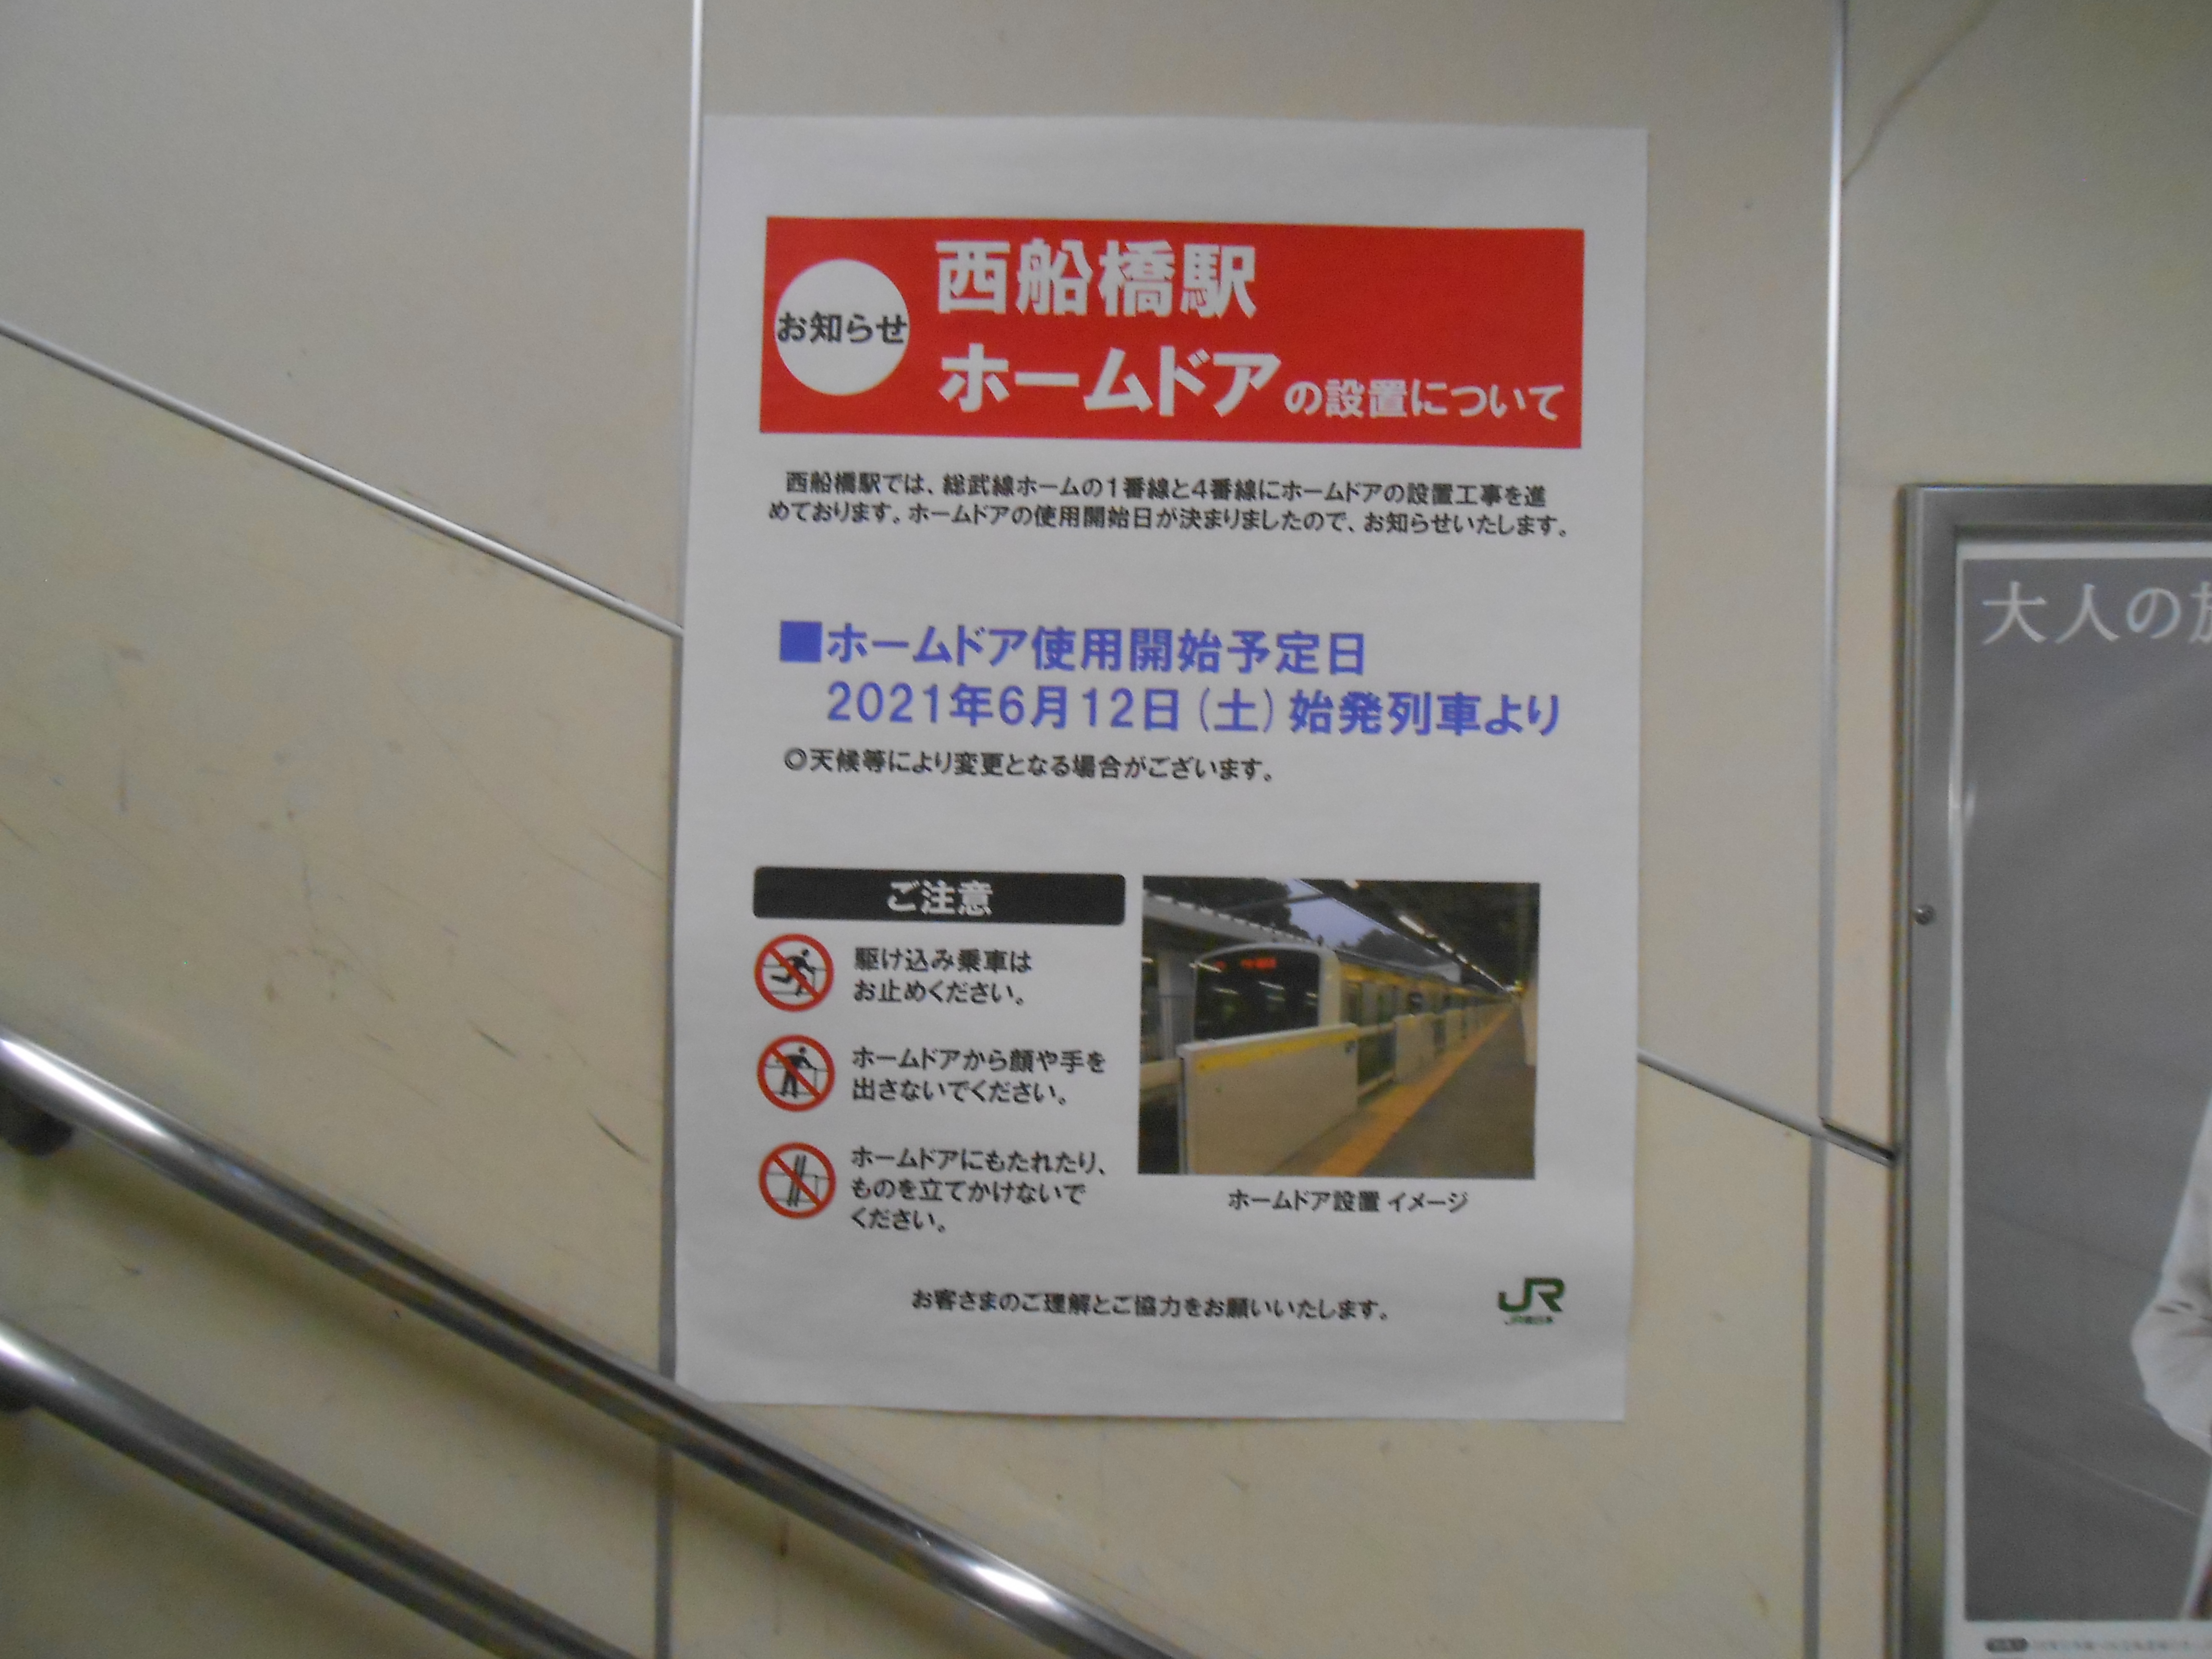 ファイル Screen Doors Of Jr Nishi Funabashi Station Platform 002 Jpg Wikipedia